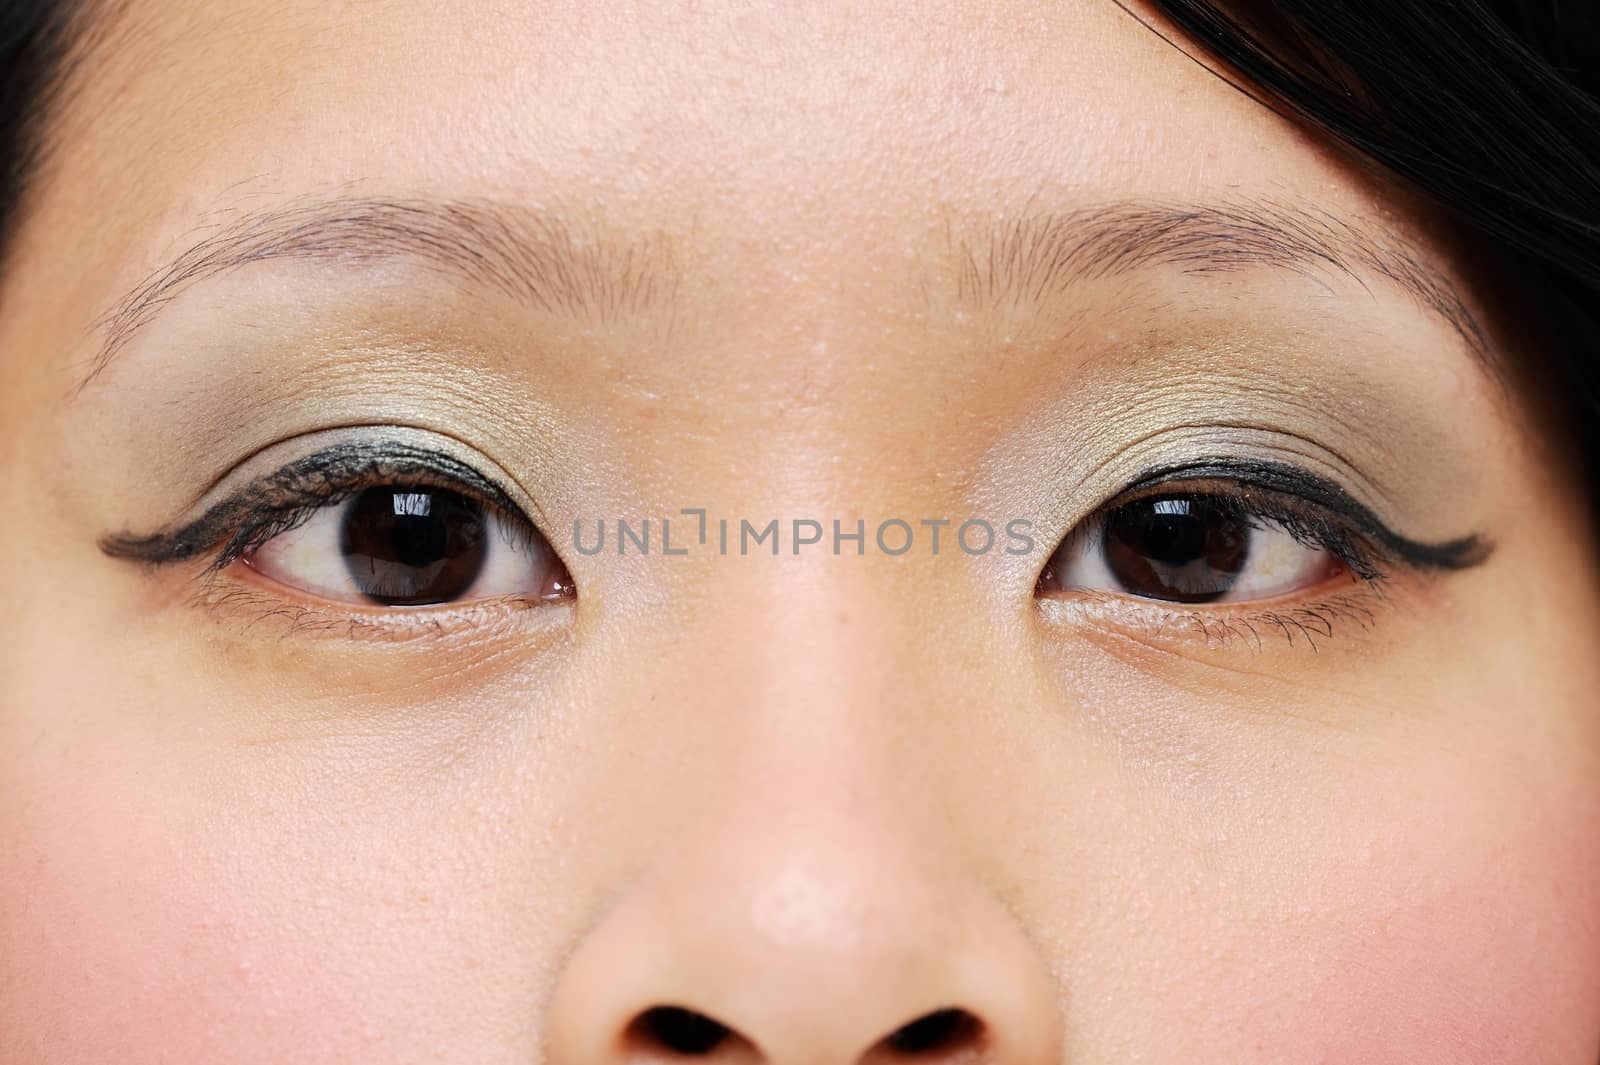 Asian girls eyes closeup with makeup